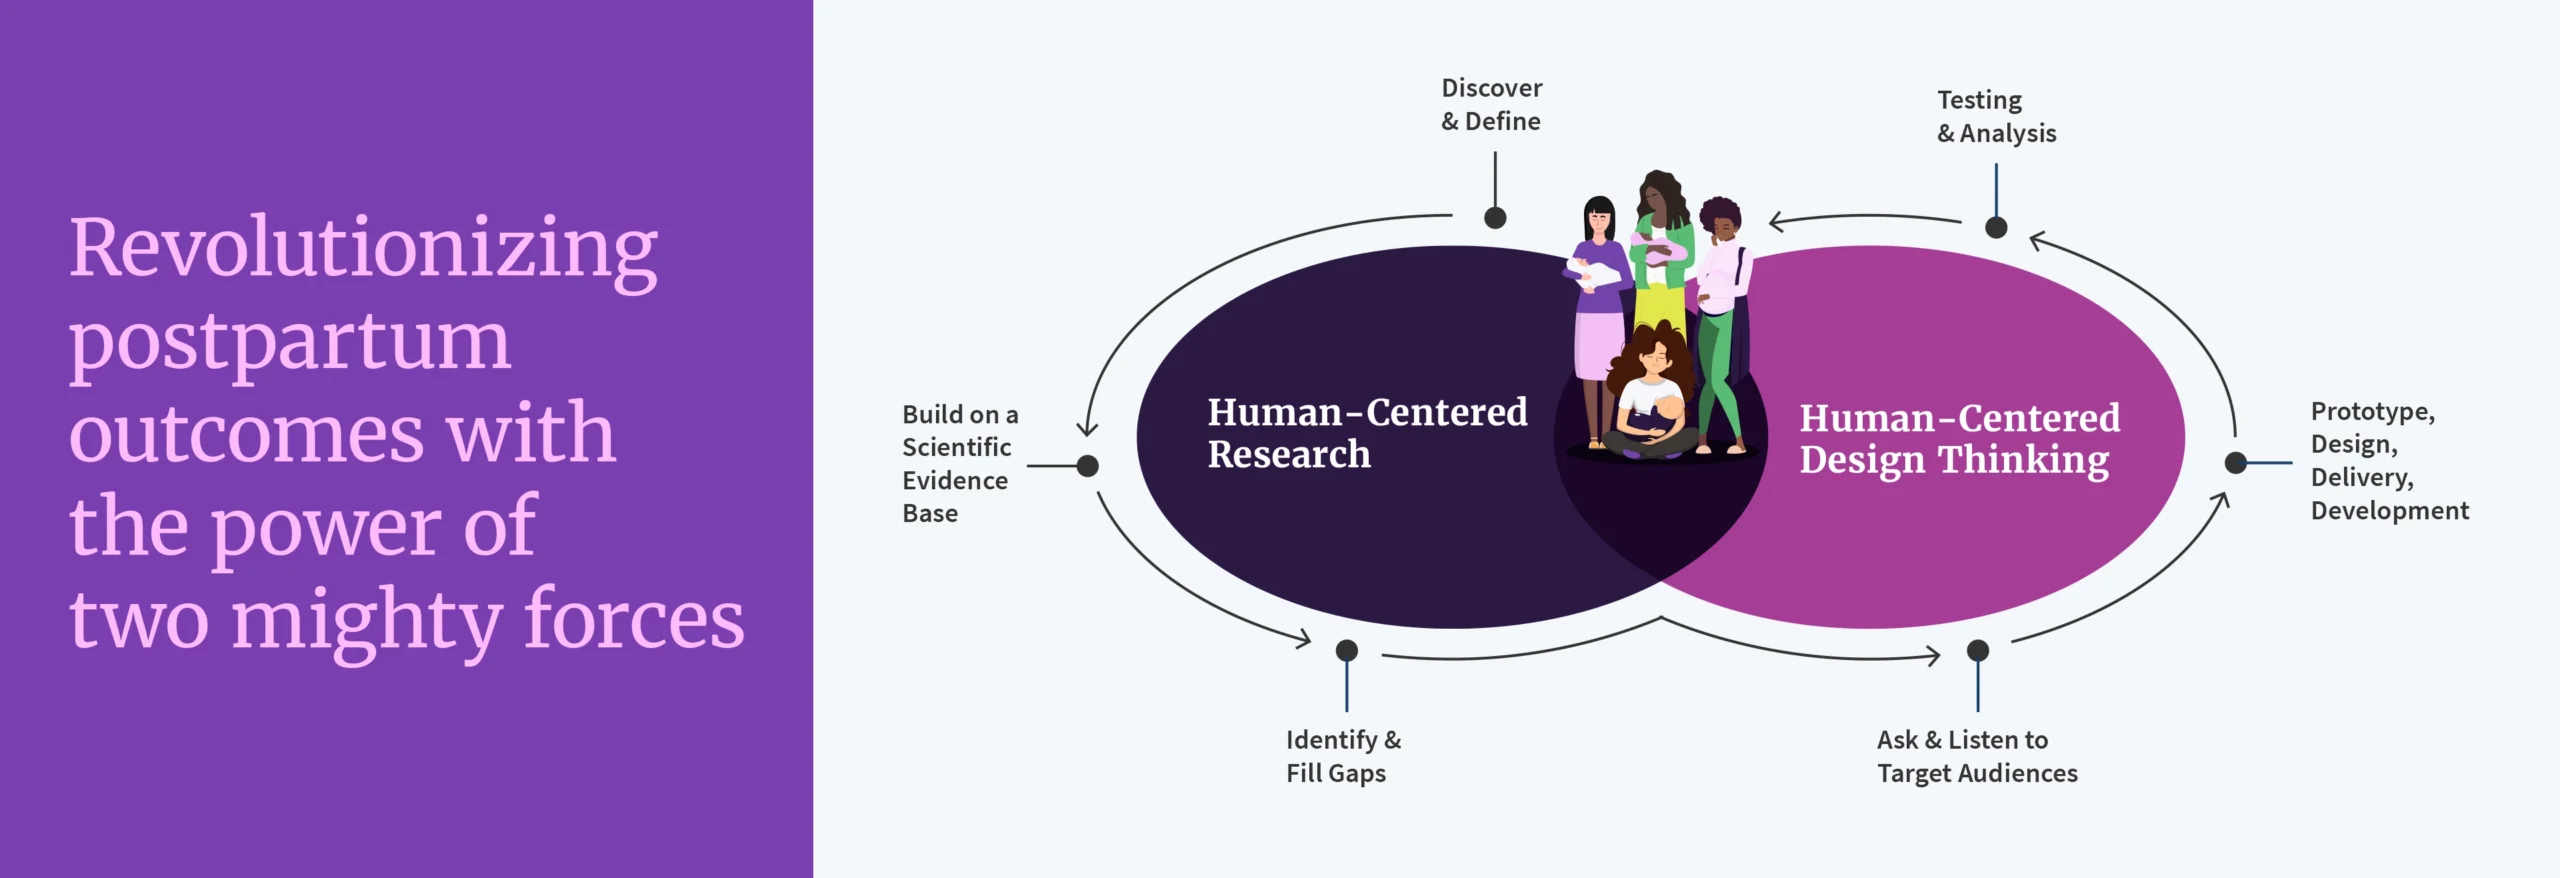 Joyuus human-centered research + design diagram